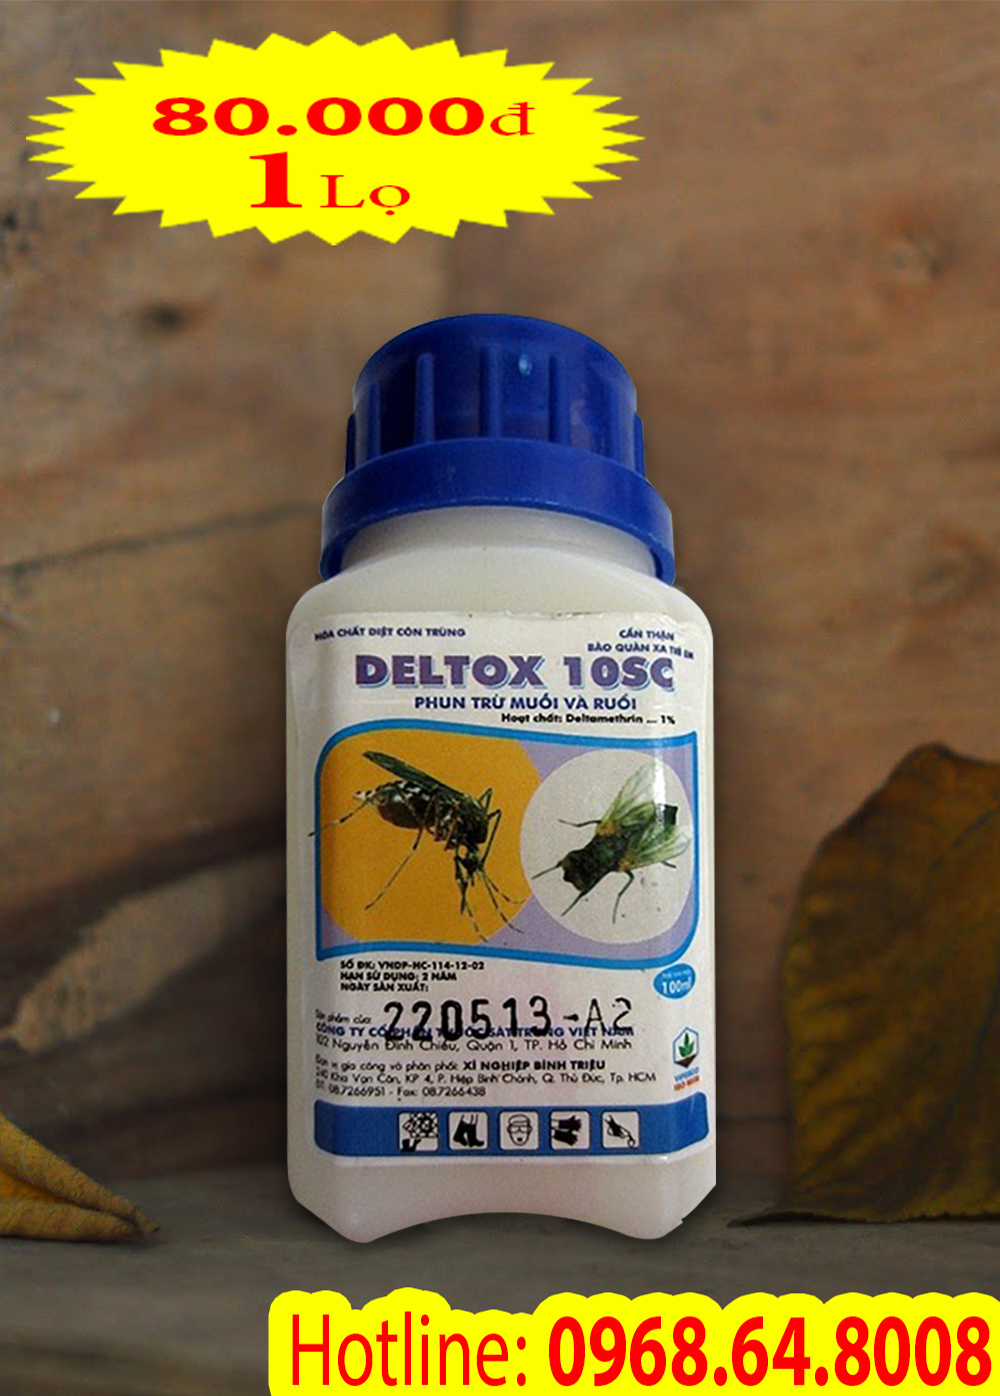 Deltox 10SC (5ml) - (Hàng của VIỆT NAM) - Thuốc diệt côn trùng, muỗi, gián, ruồi, kiến, bọ chét...